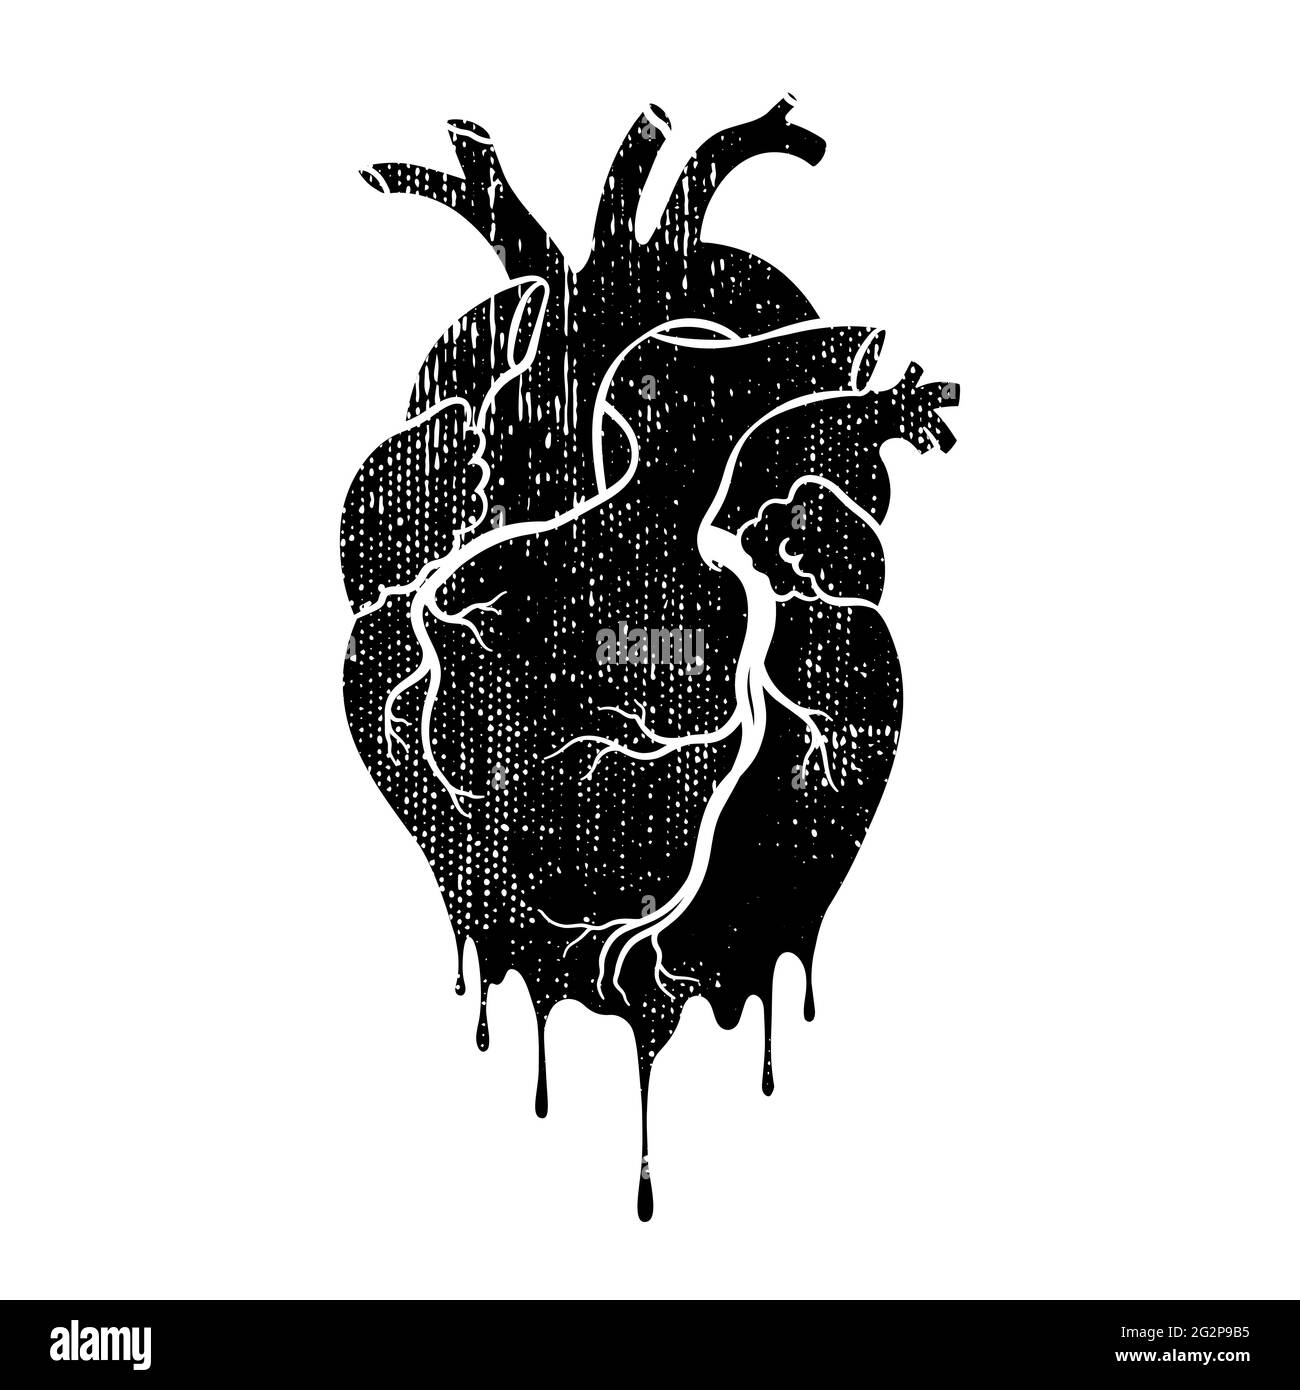 Grungen Sie das menschliche Herz. Anatomisch realistisches tropfendes Herz, Strichgrafiken, Vektorgrafik. Stock Vektor